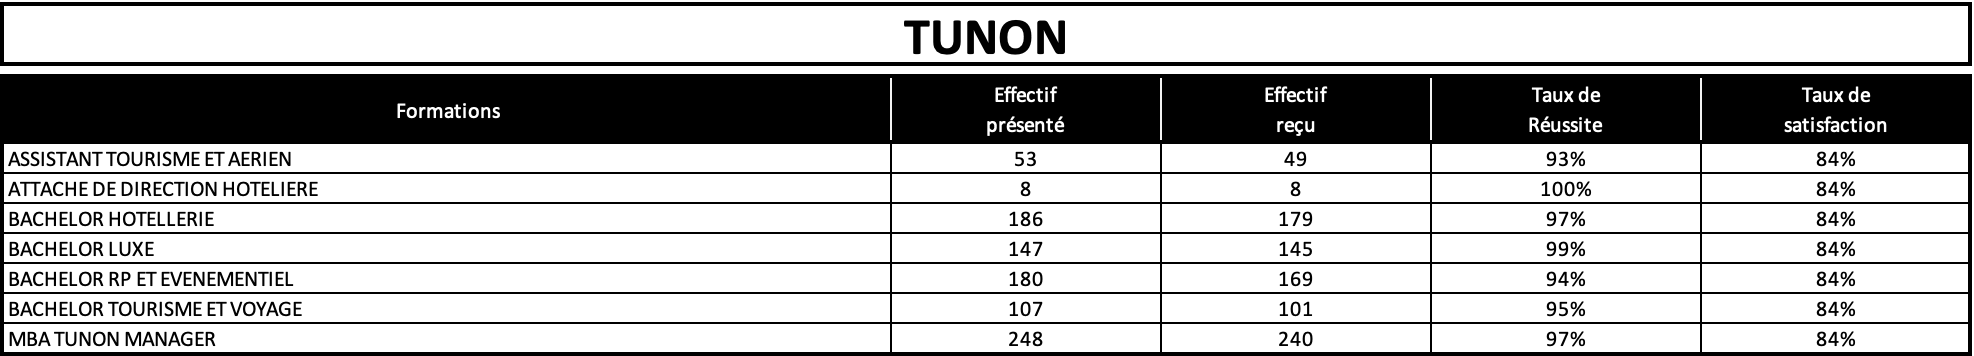 classement-satisfaction-tunon